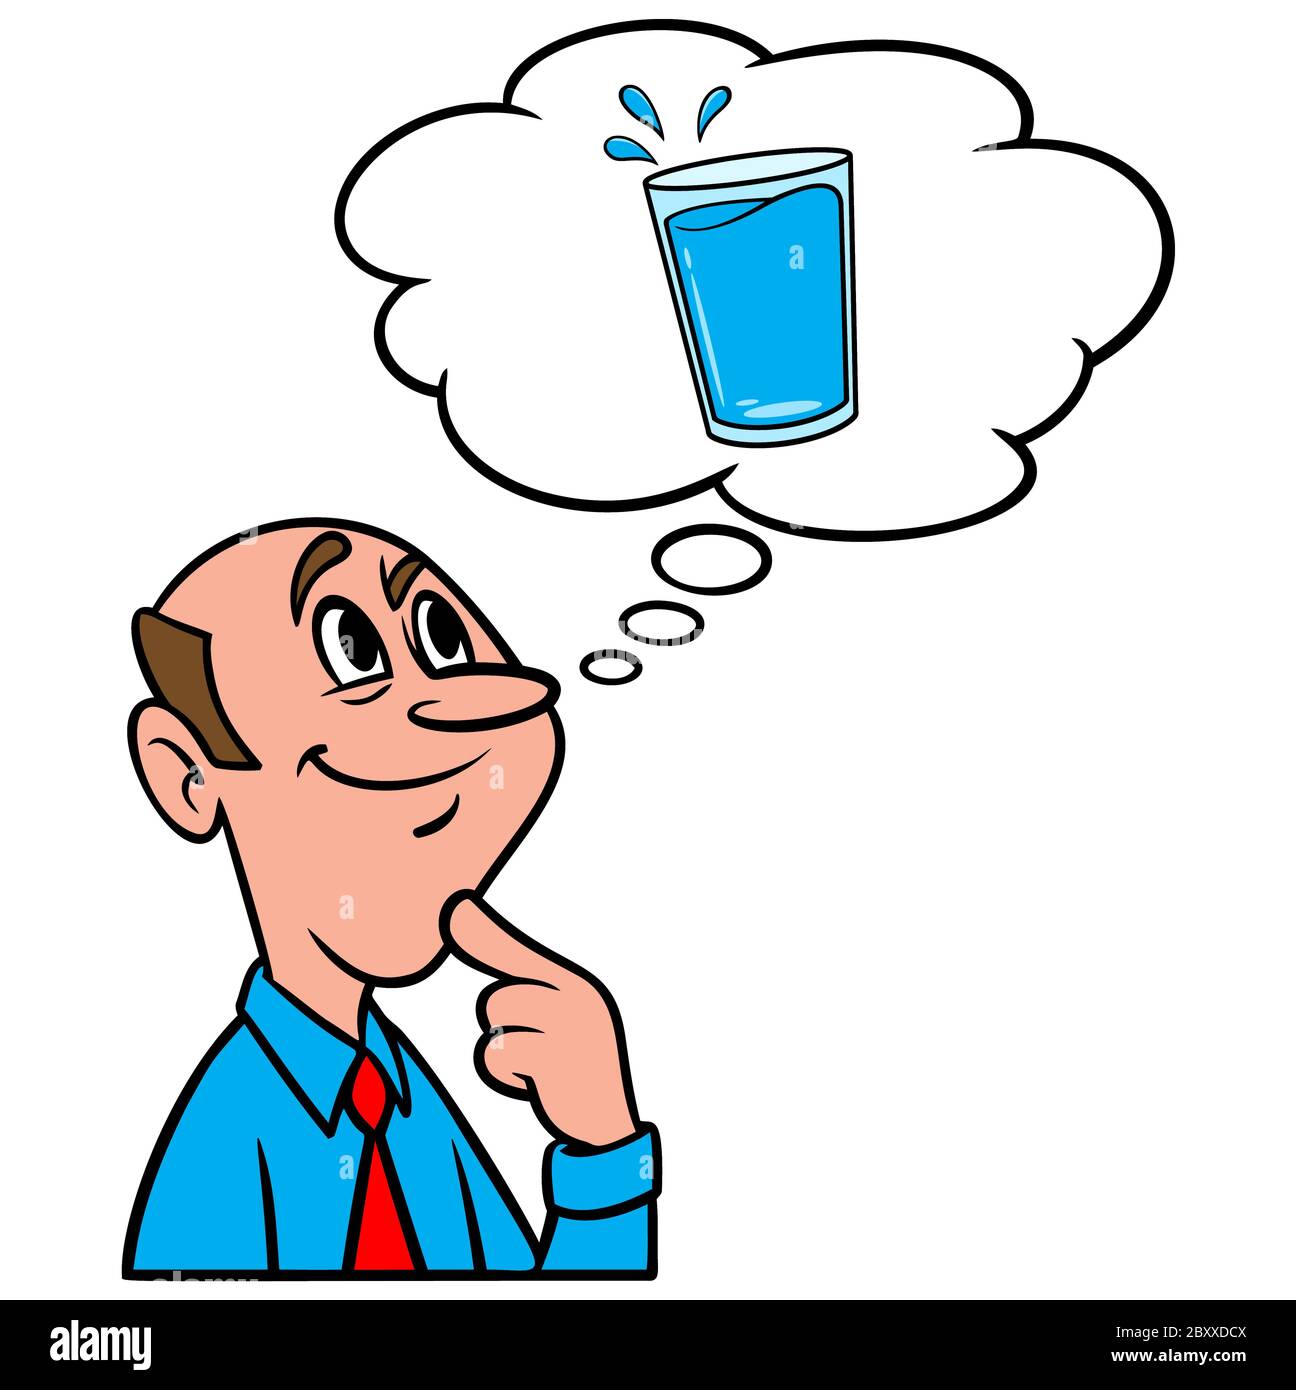 Penser à un verre d'eau - une illustration d'une personne penser à un verre d'eau. Illustration de Vecteur